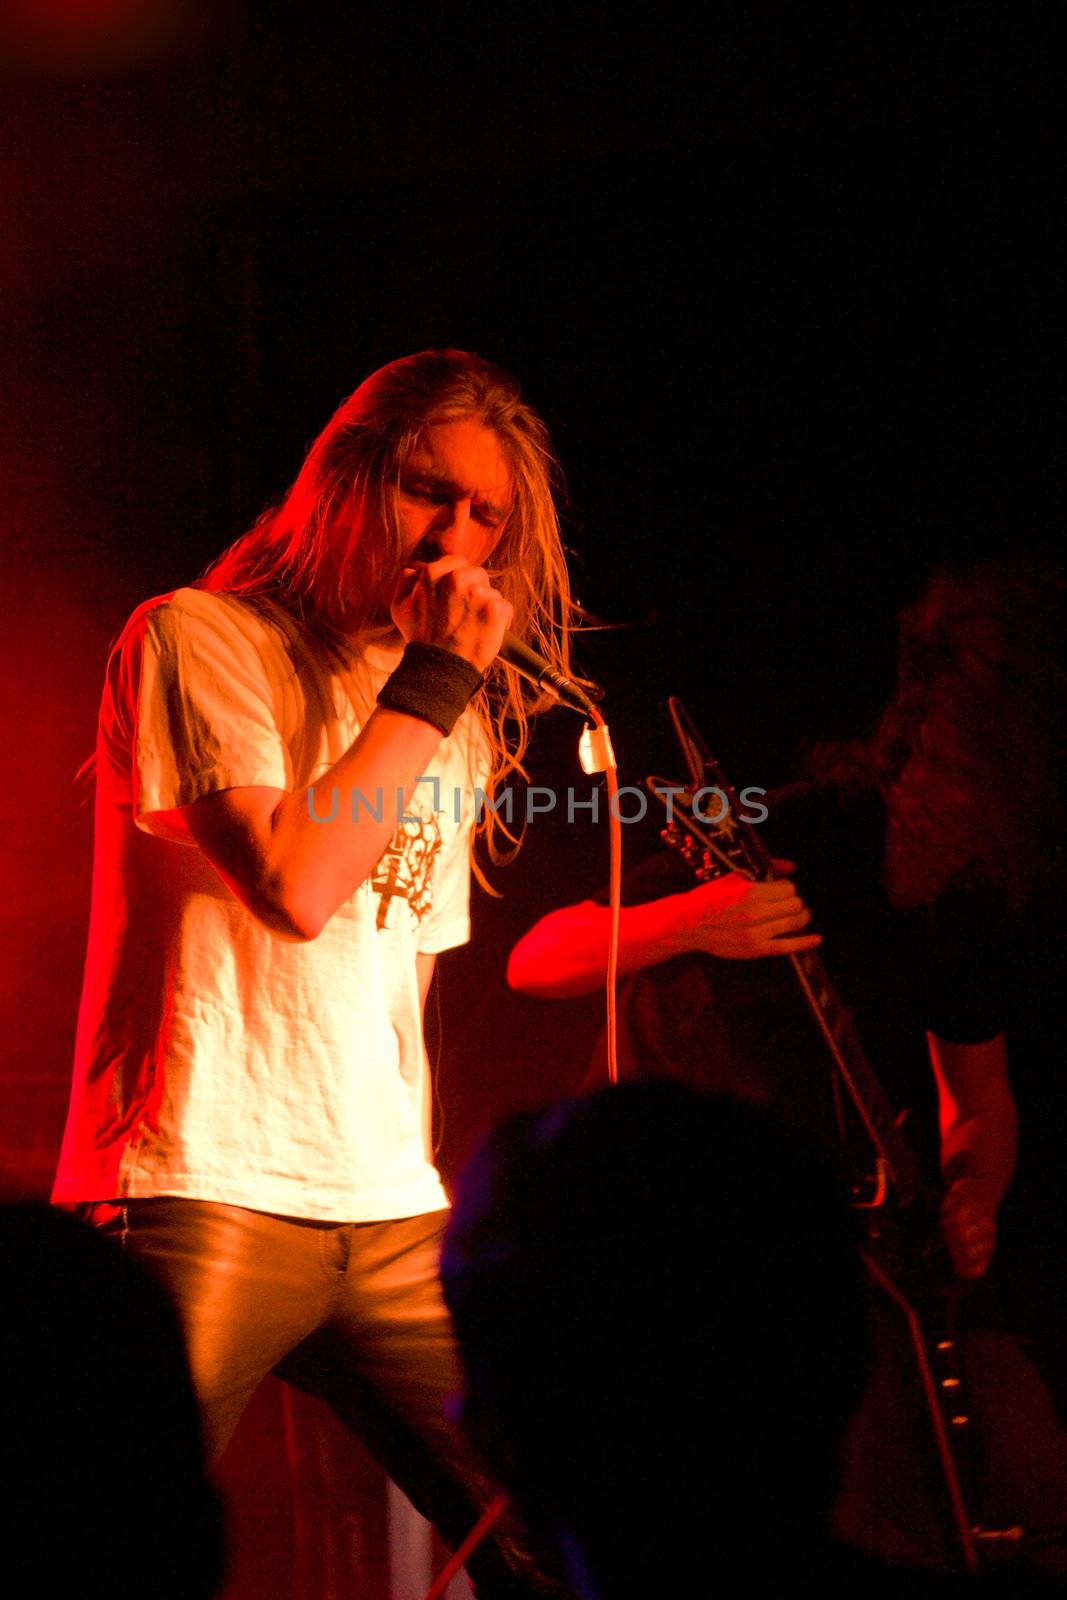 Death metal artist on stage, band Septory by olga_sweet